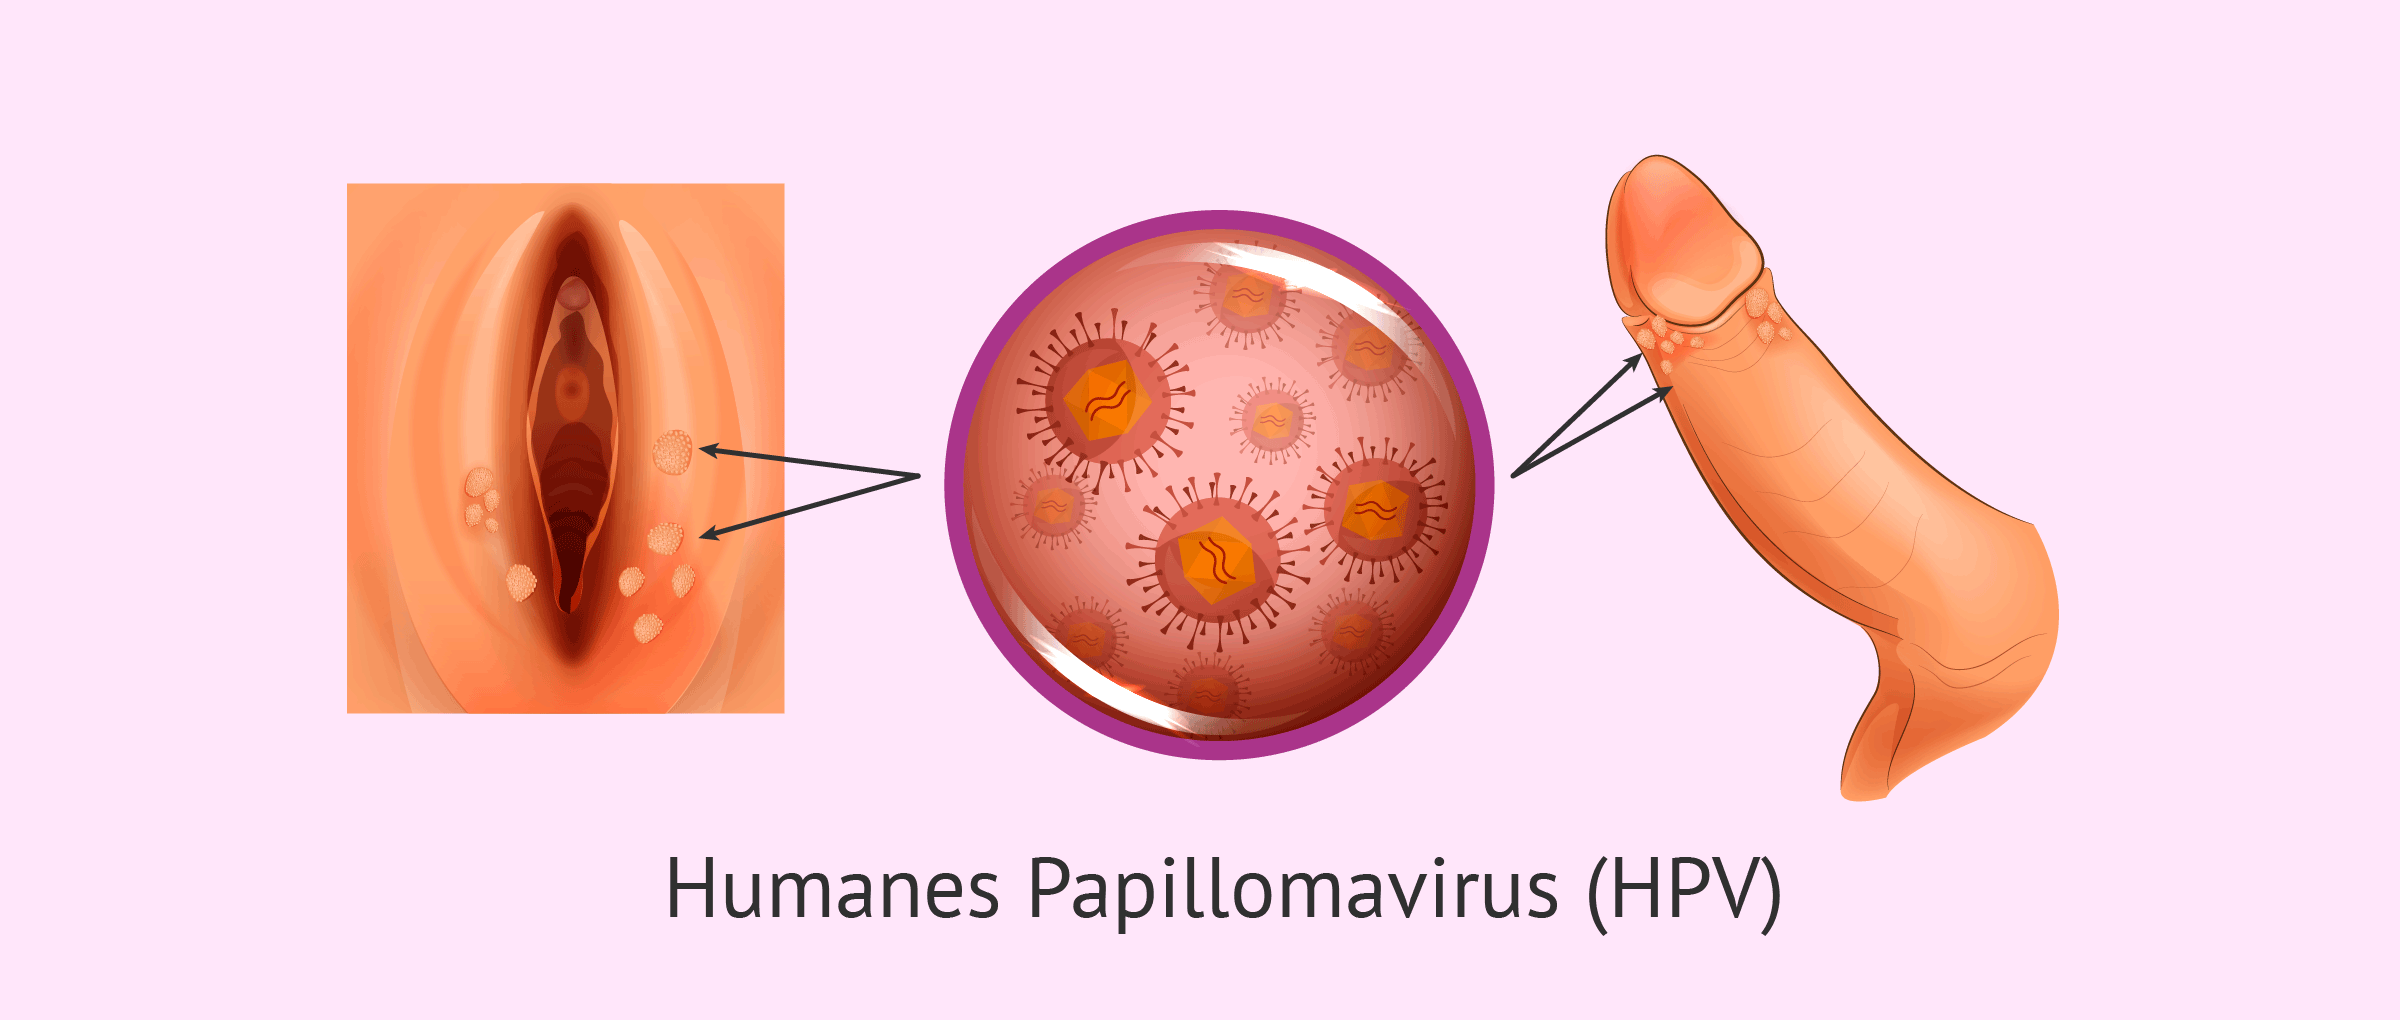 le papillomavirus hpv)